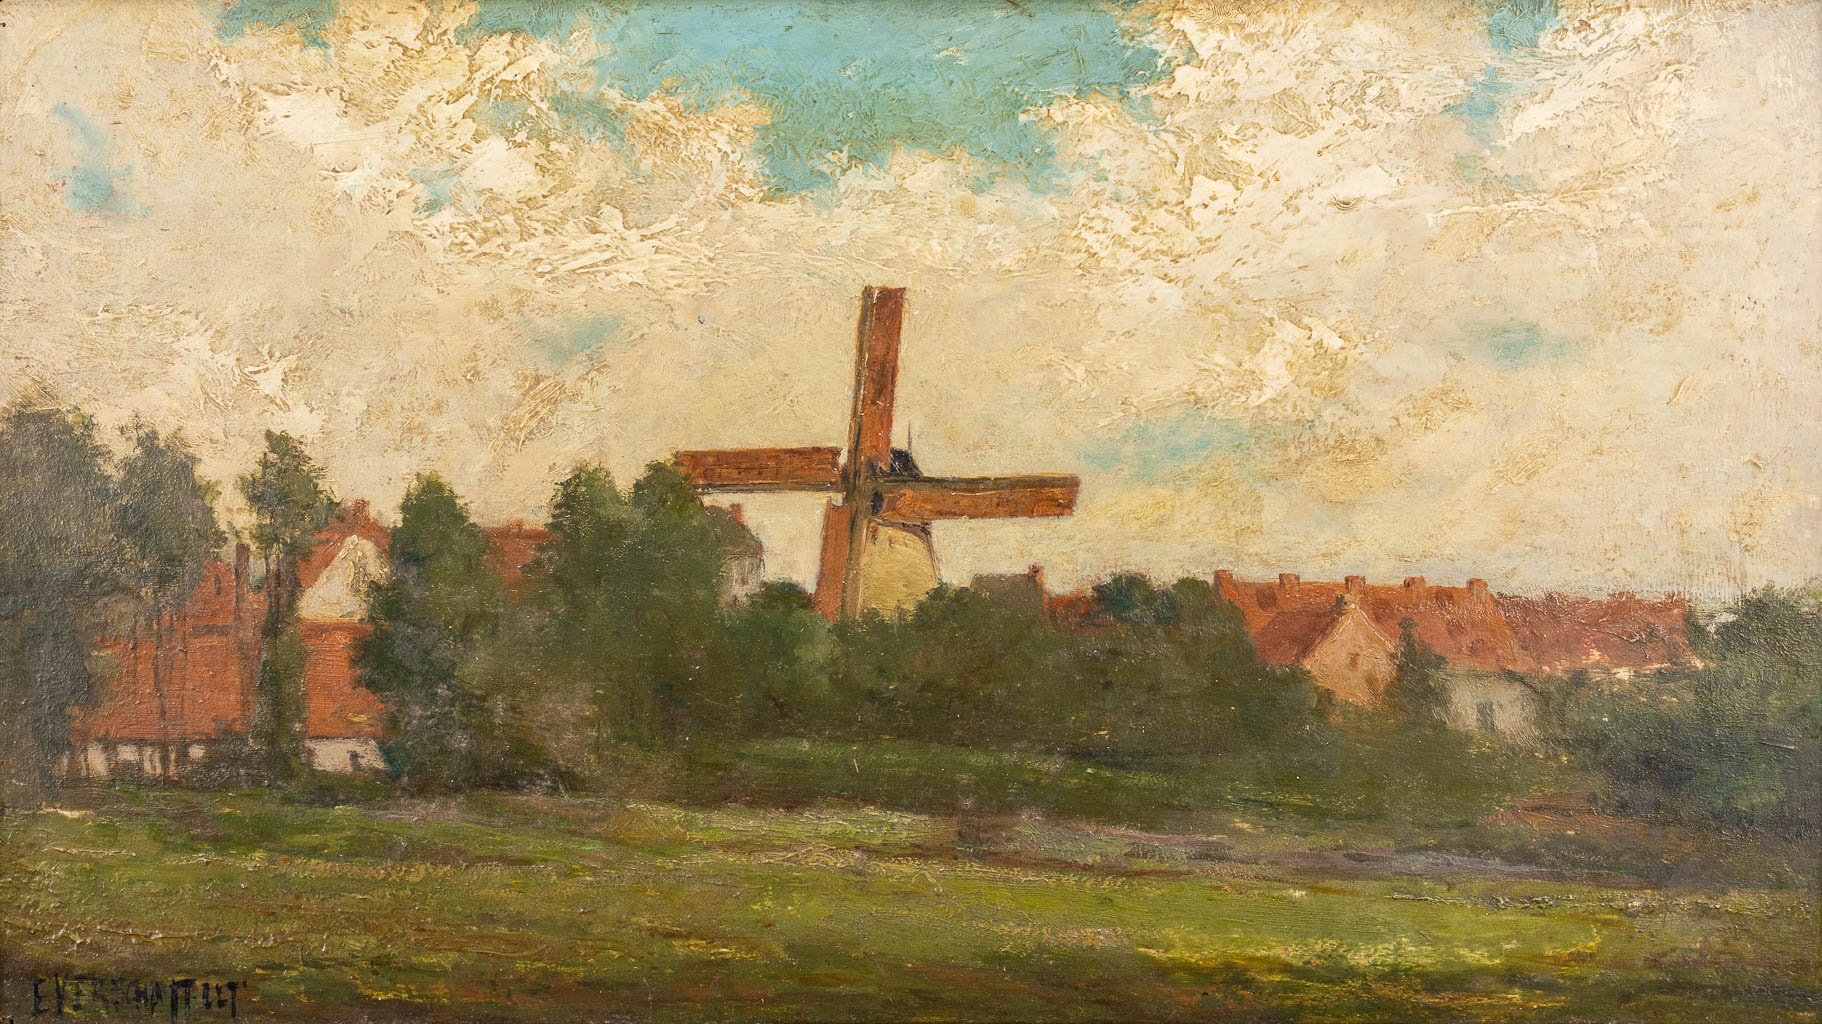 Edouard VERSCHAFFELT (1874-1955)(attr.) 'Landscape with a windmill' oil on panel. (W:50 x H:28 cm)